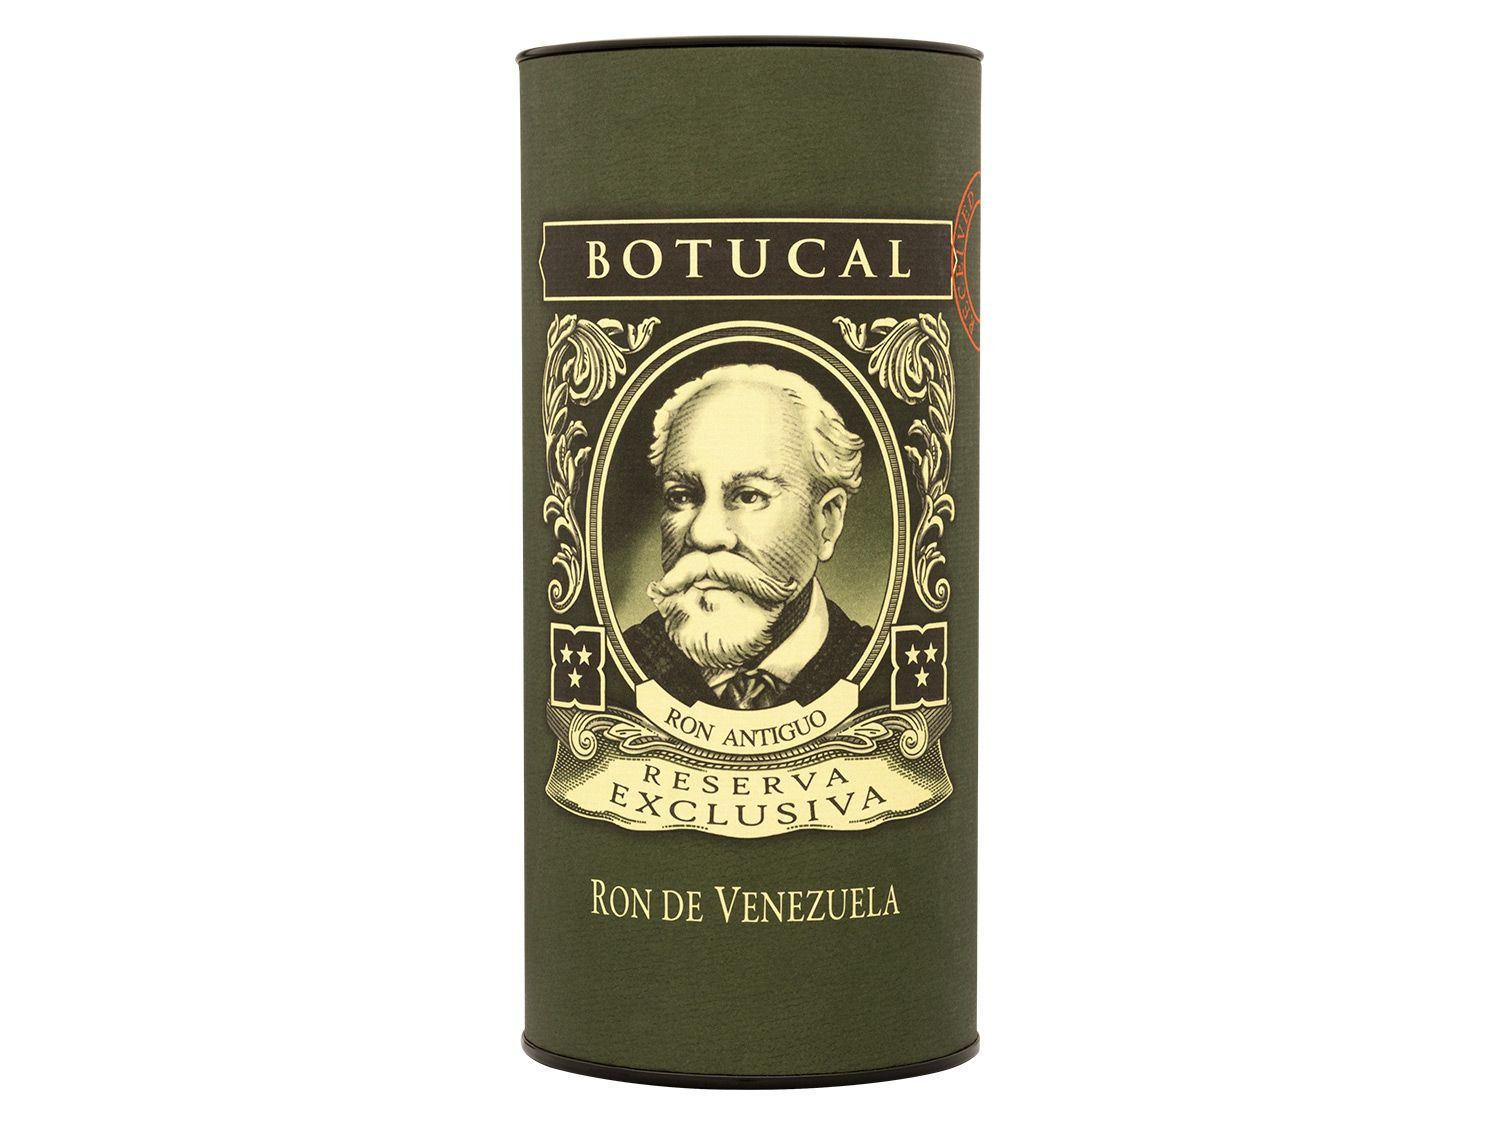 40% Vol Rum Geschenkbox Botucal Exclusiva mit Reserva